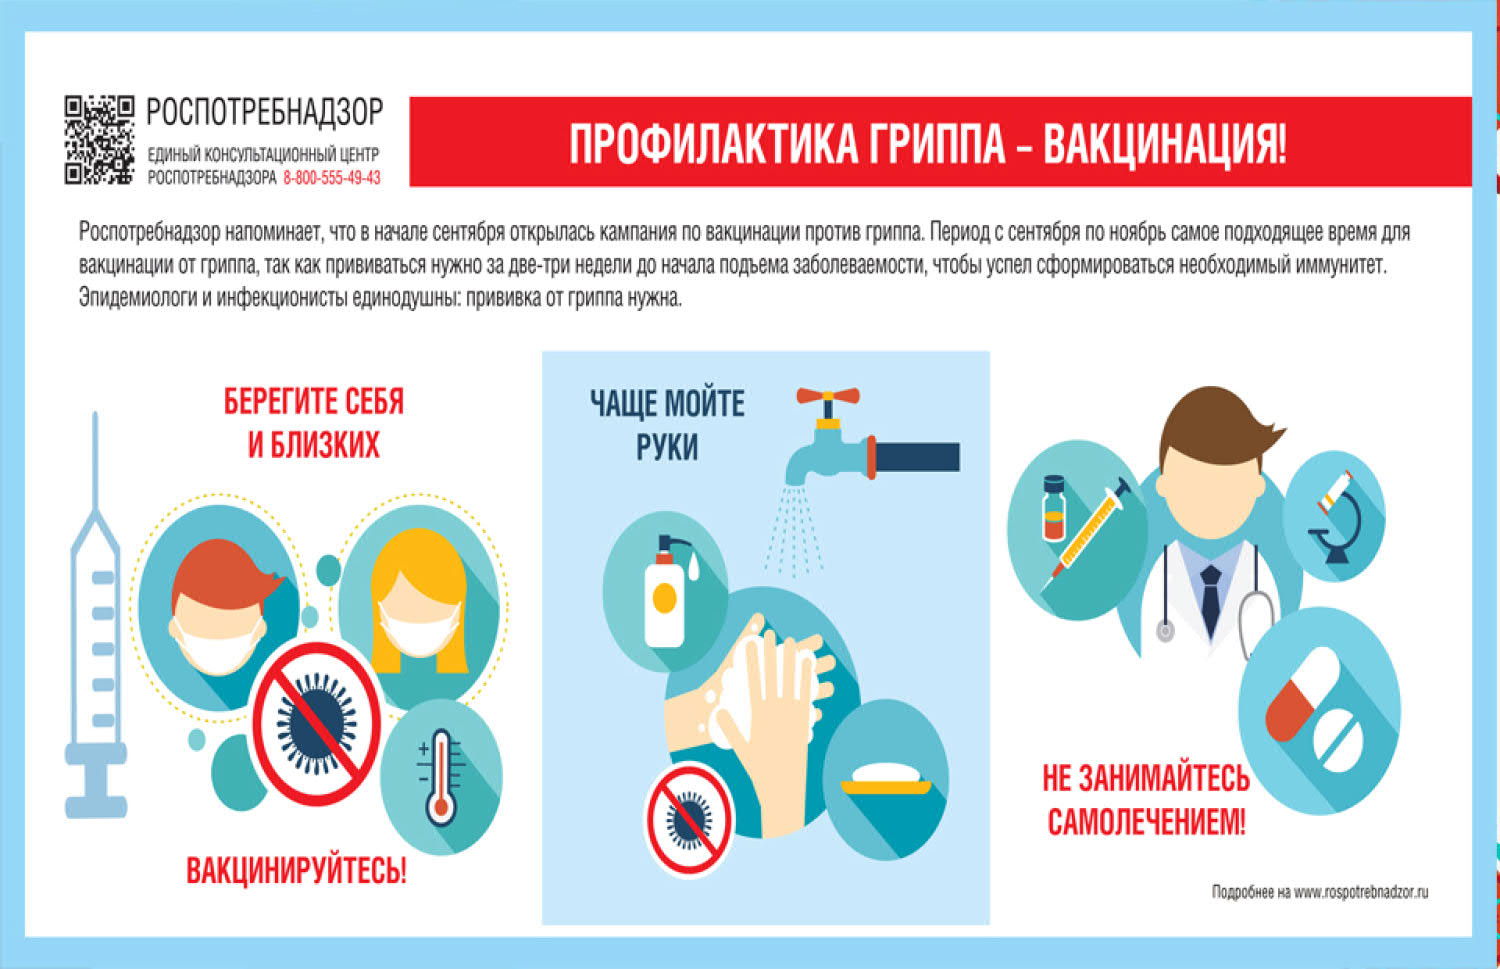 Основные меры профилактики против гриппа.